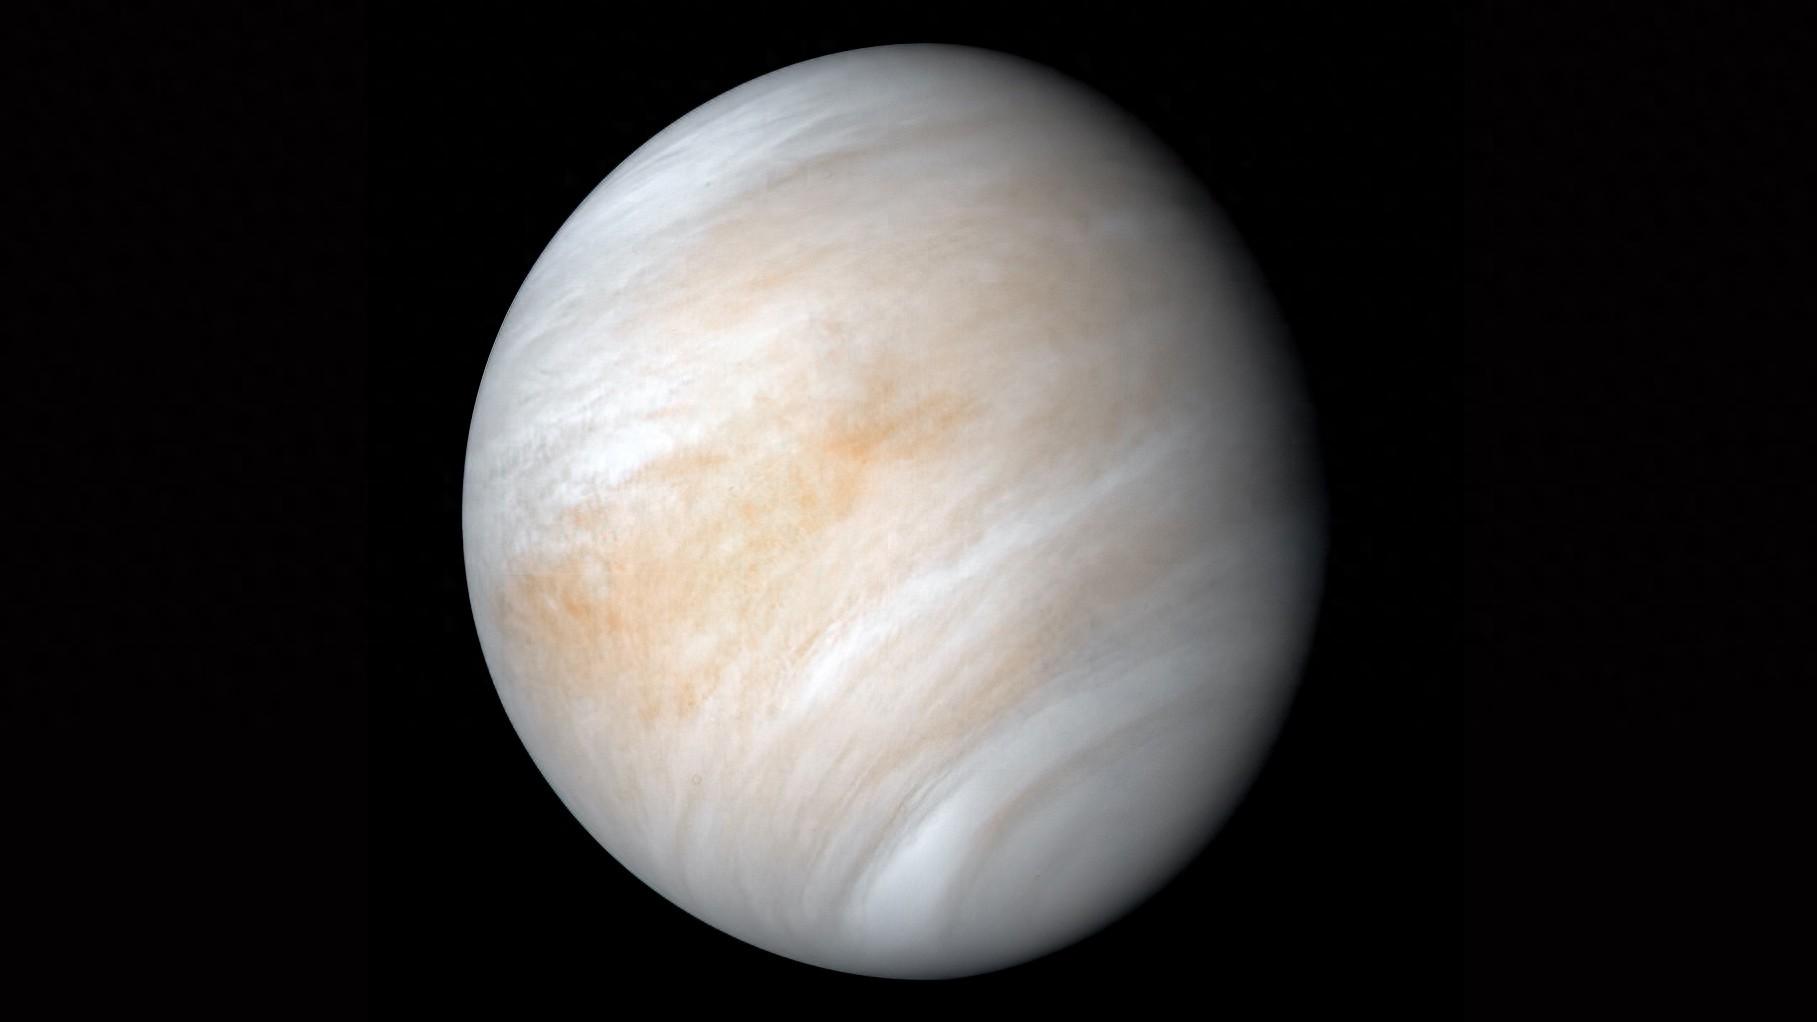 金星资料简介行星图片